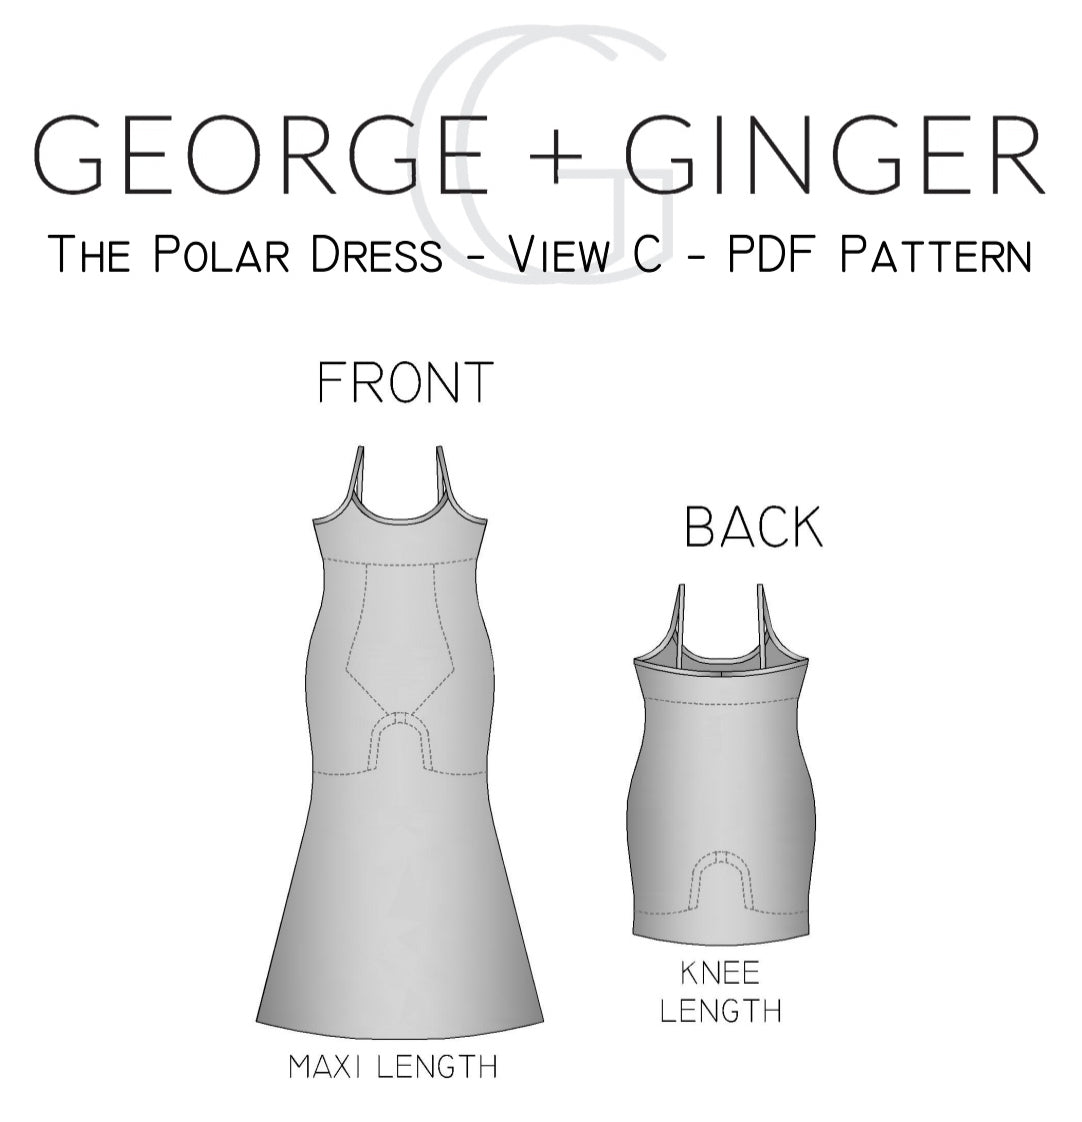 The Polar Dress - View C - PDF Sewing Pattern